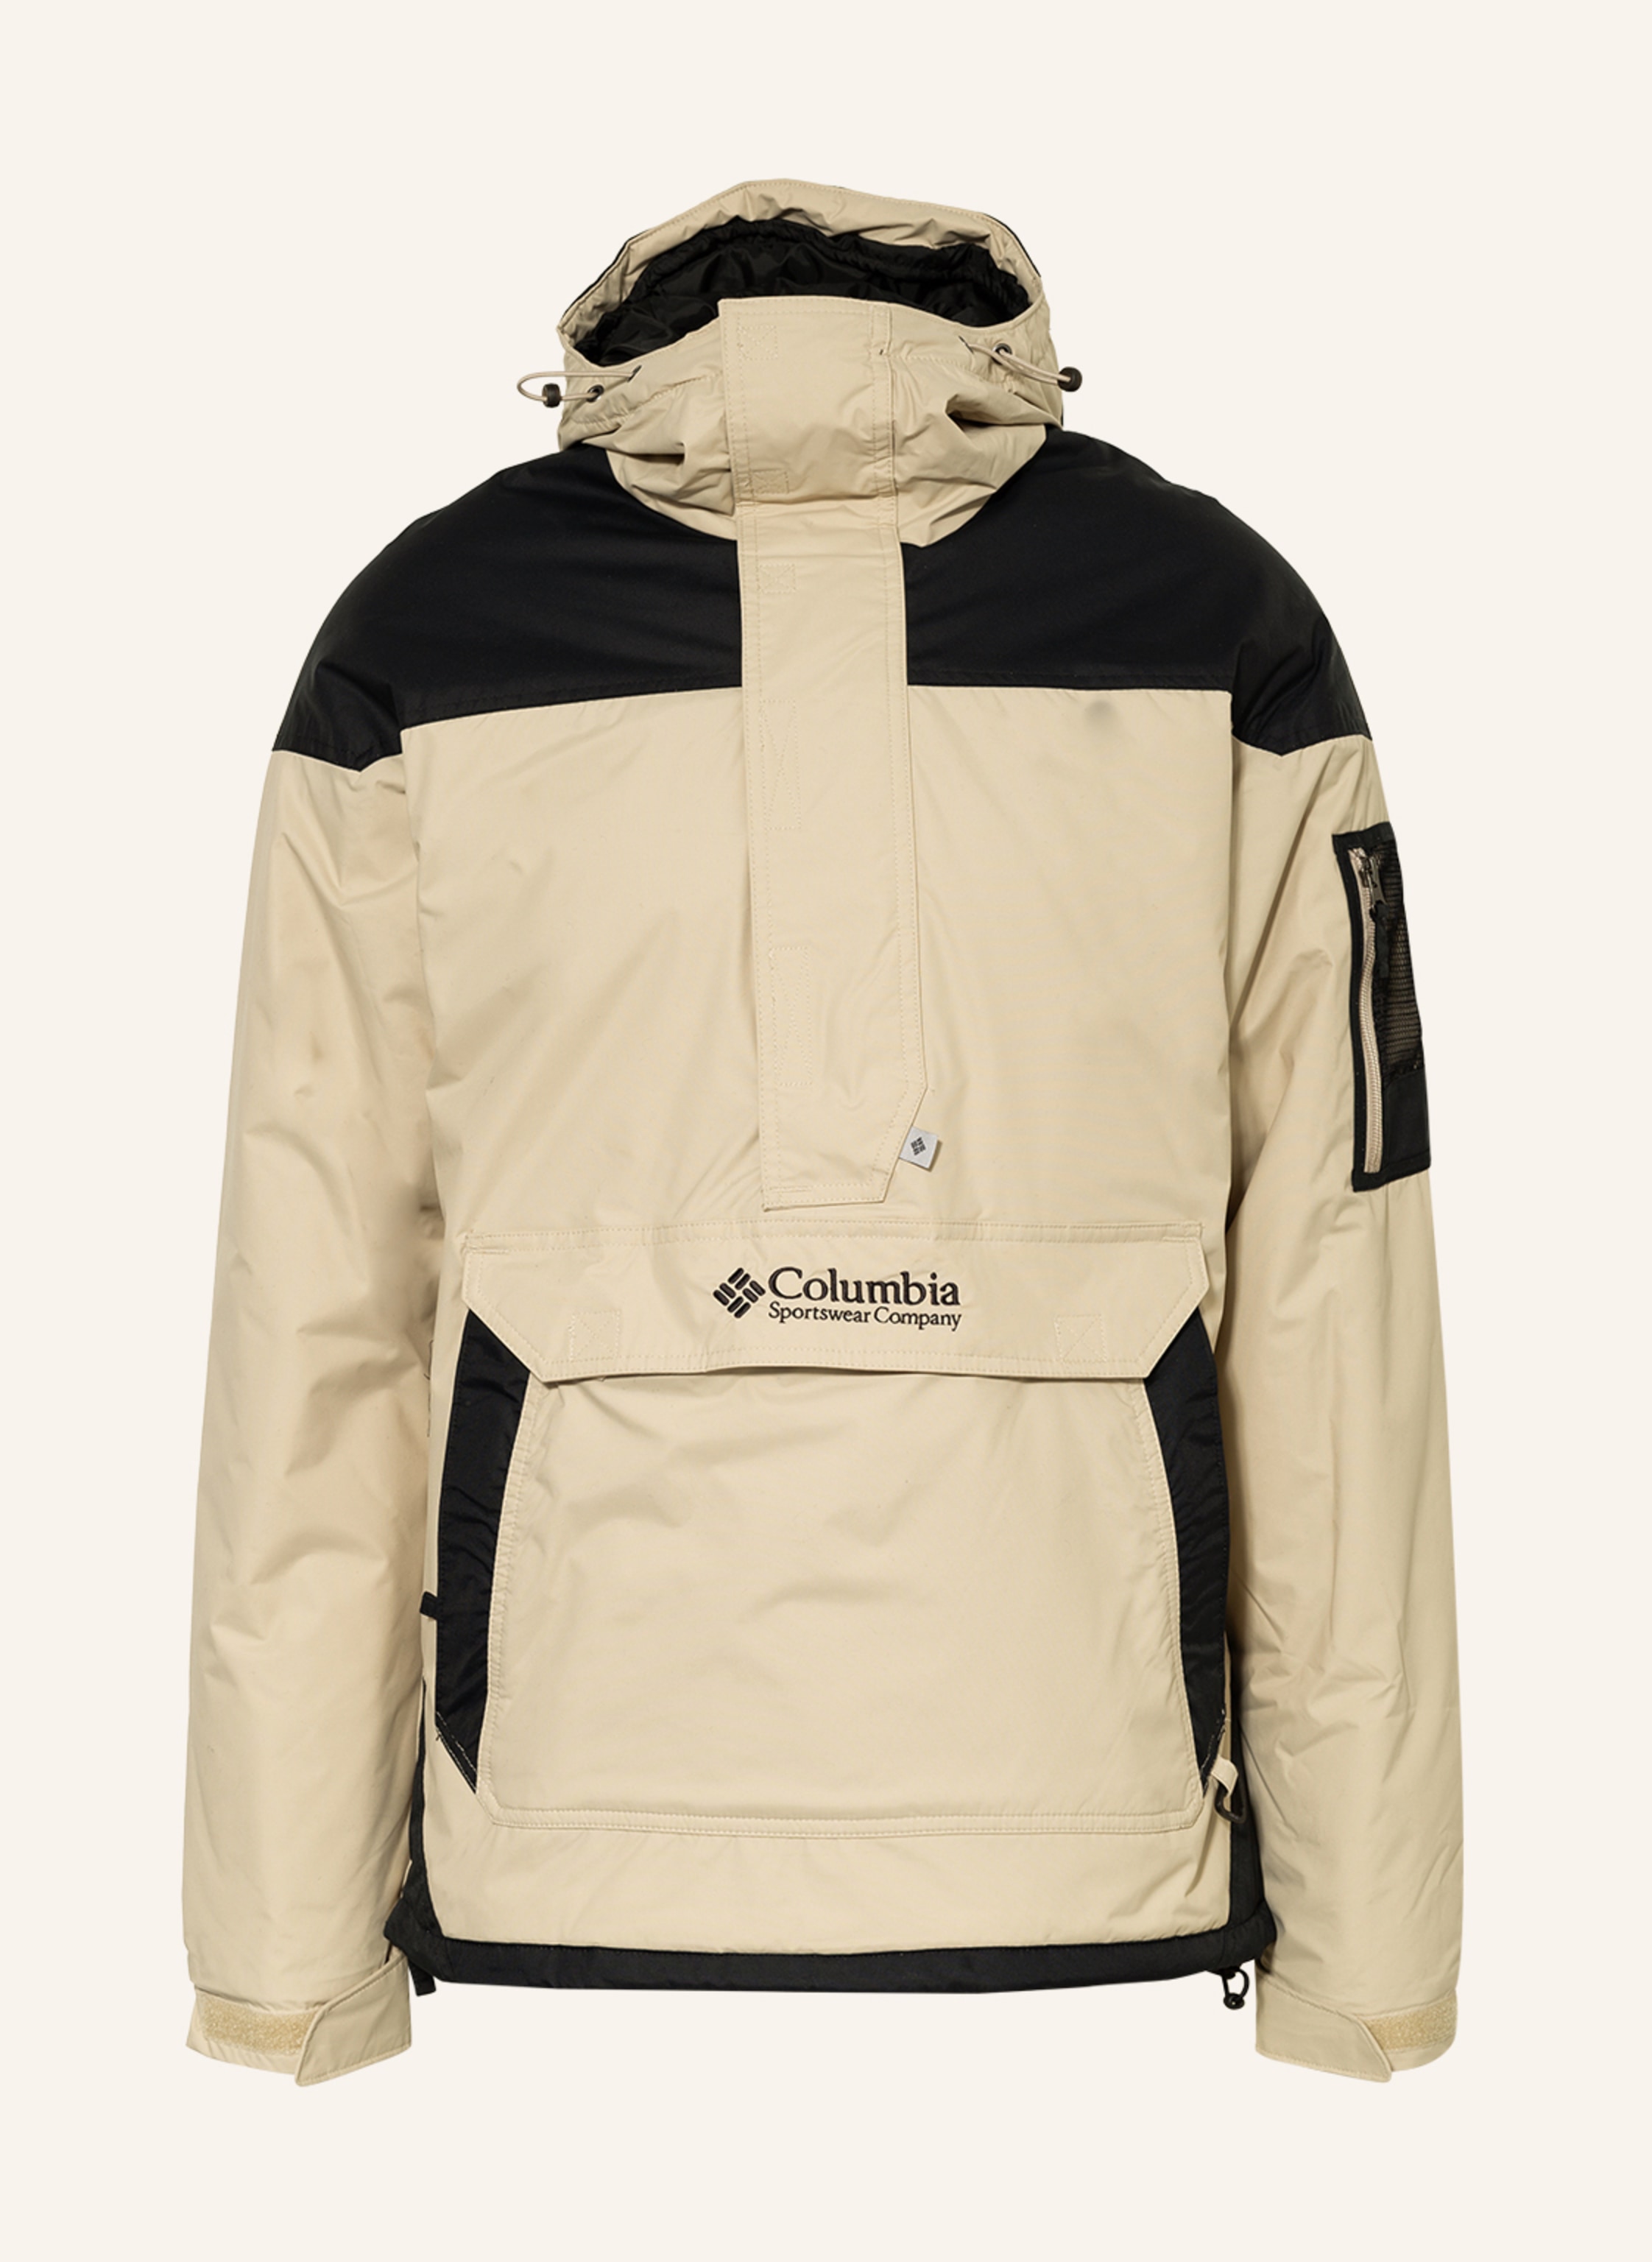 Plicht moe Stratford on Avon Columbia Anorak jacket CHALLENGER in beige/ black | Breuninger